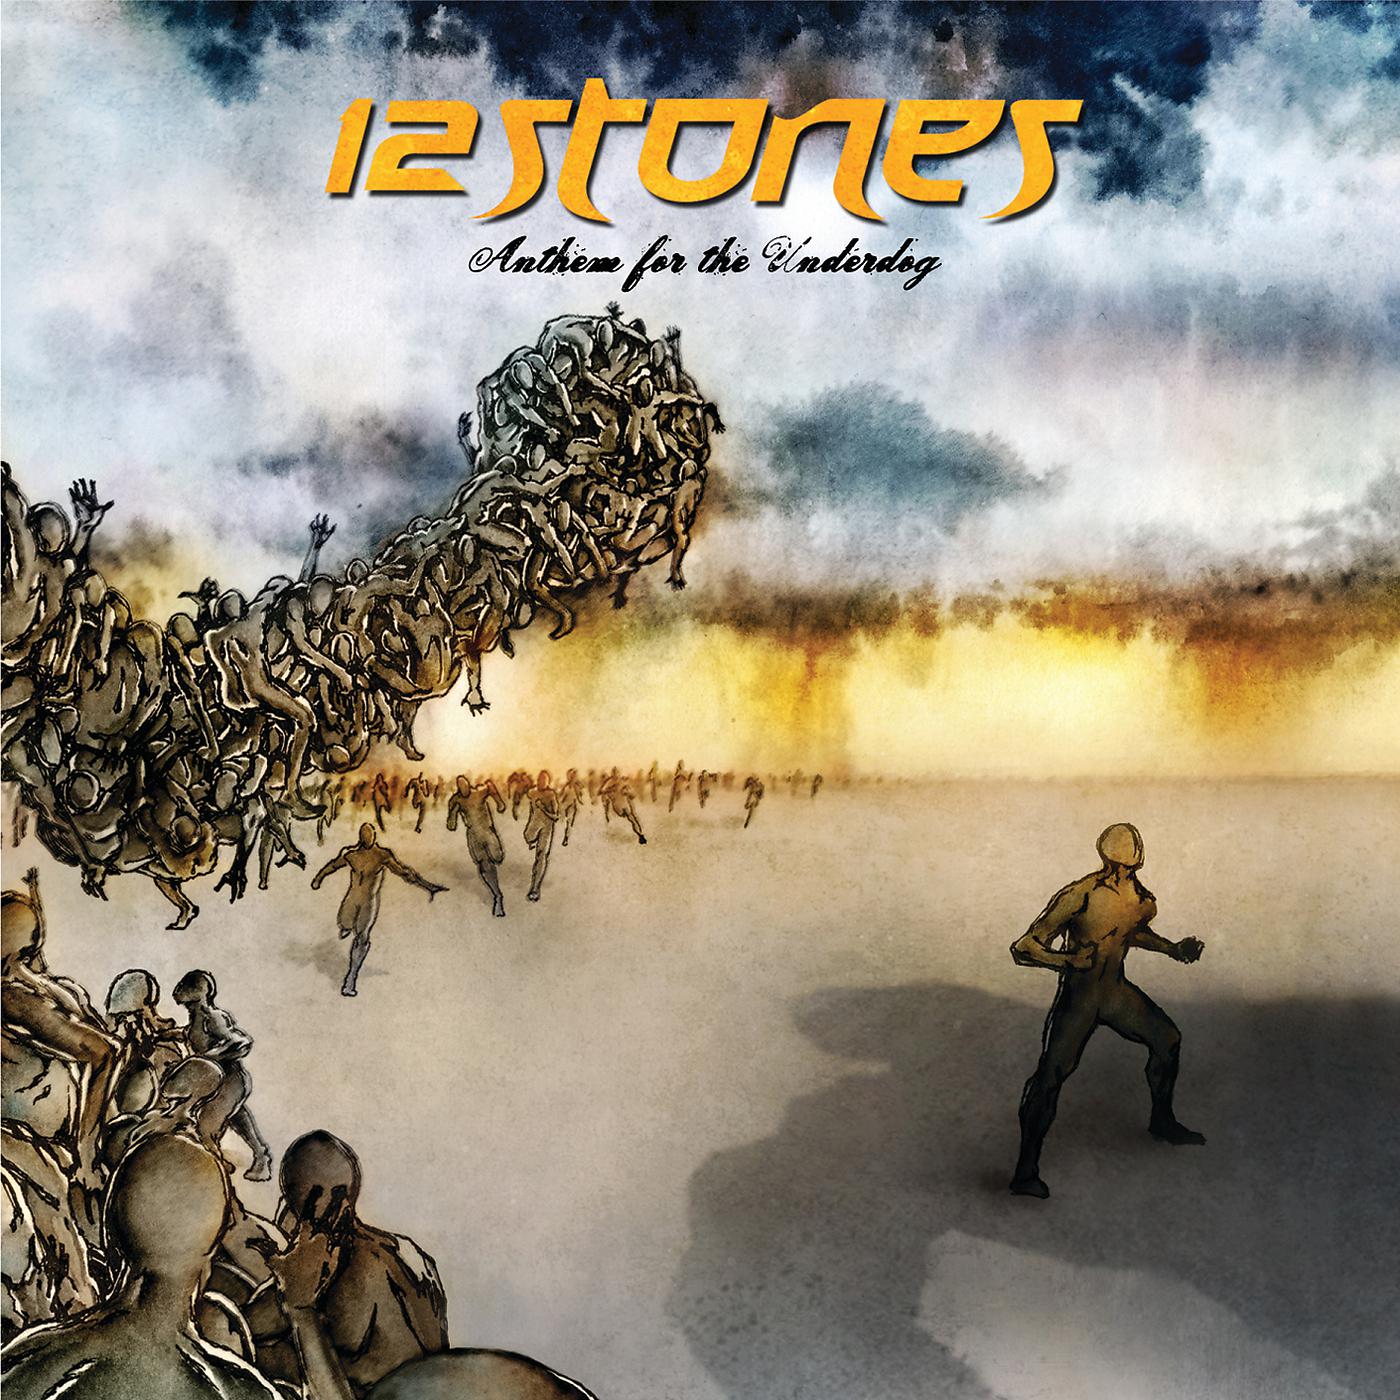 12 стоун. 12 Stones Anthem for the Underdog. 12 Stones 12 Stones album. 12 Stones Anthem for the Underdog CD Cover. 12 Stones lifeless Cover.